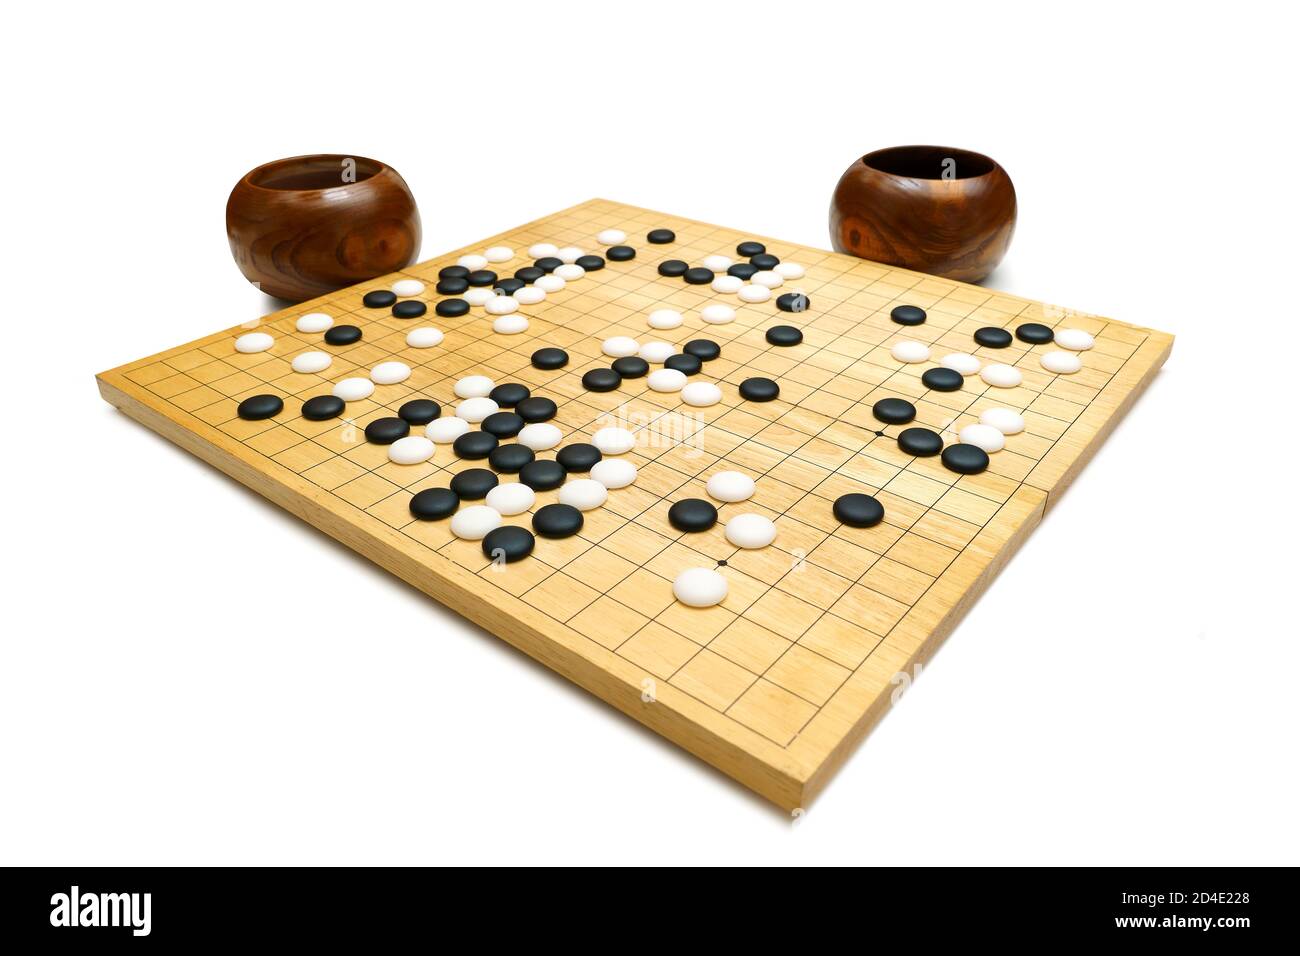 Schwarze und weiße Steine auf einem 'GO' Brett aus Holz auf weißem  Hintergrund - traditionelle chinesische Strategie Brettspiel (genannt Baduk  in Korea, Weiqi in C Stockfotografie - Alamy